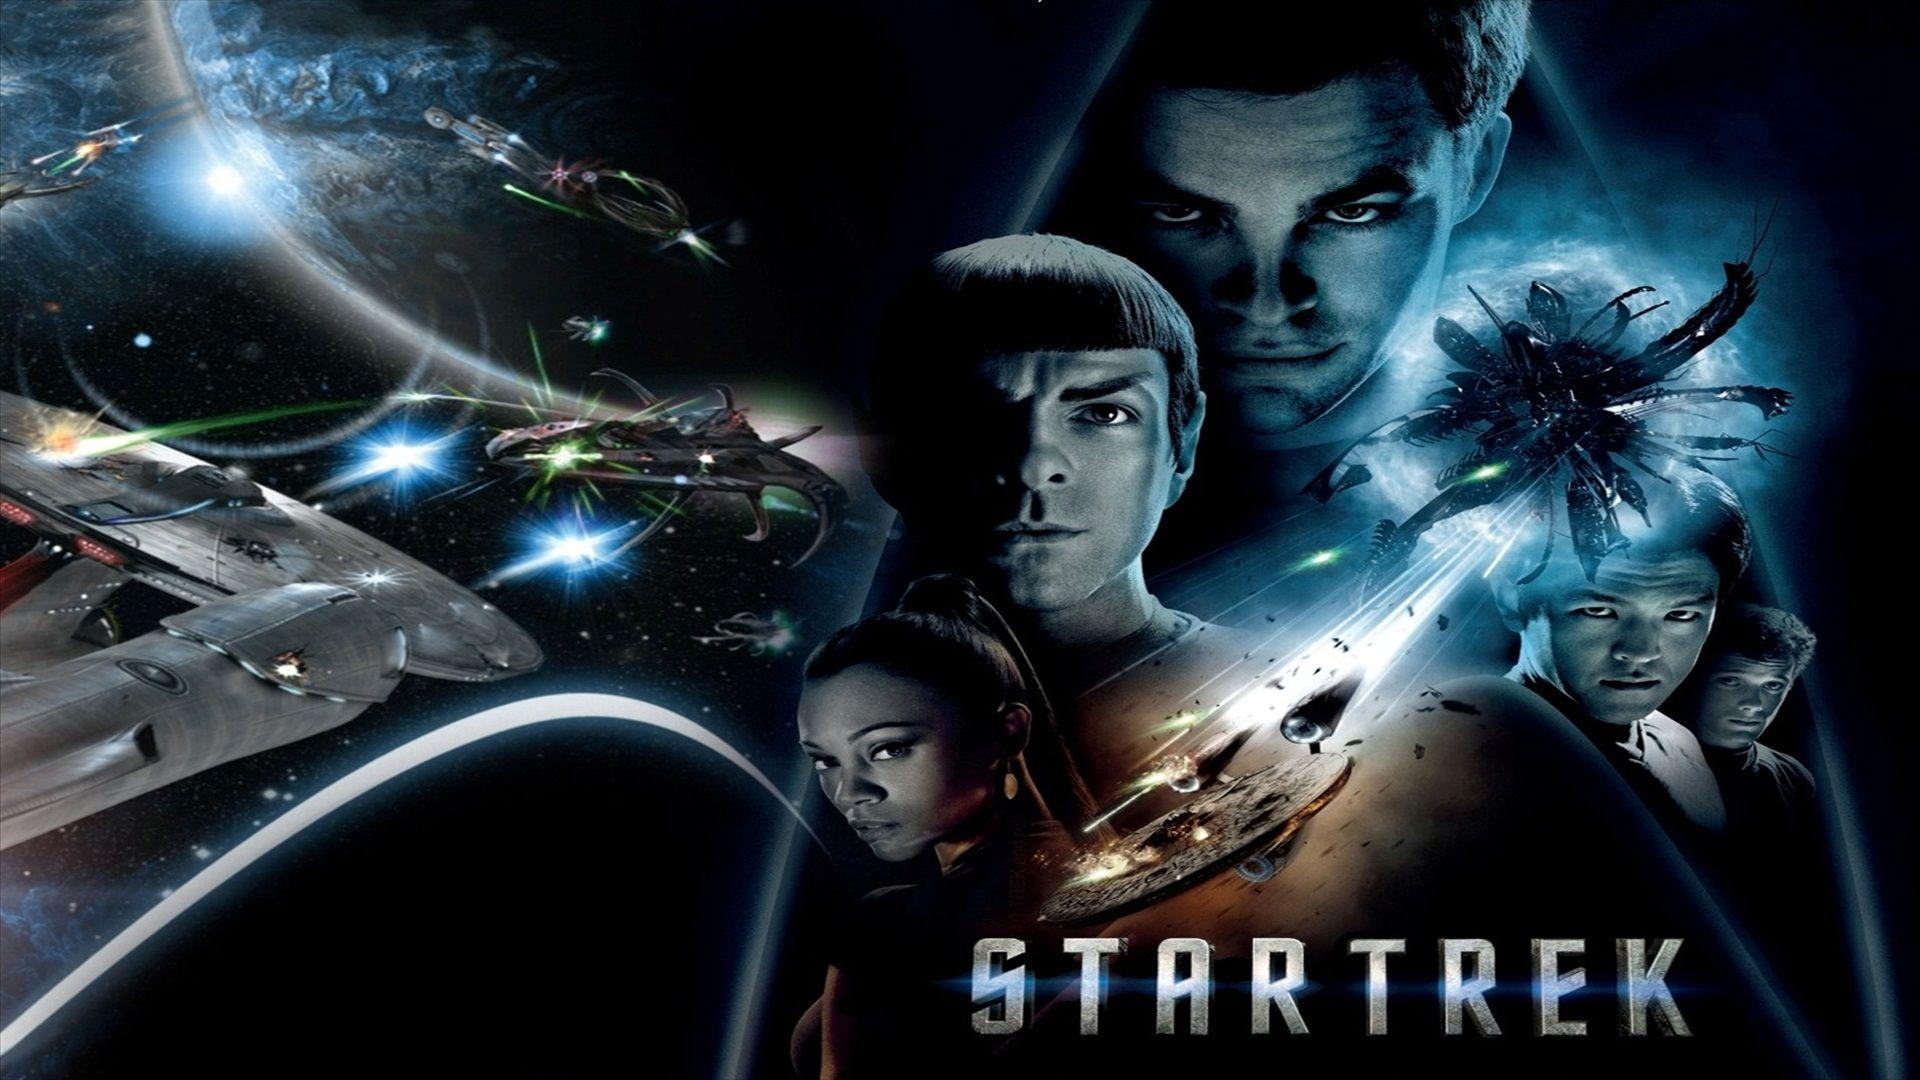 Star Trek Movie Wallpaper Free Star Trek Movie Background